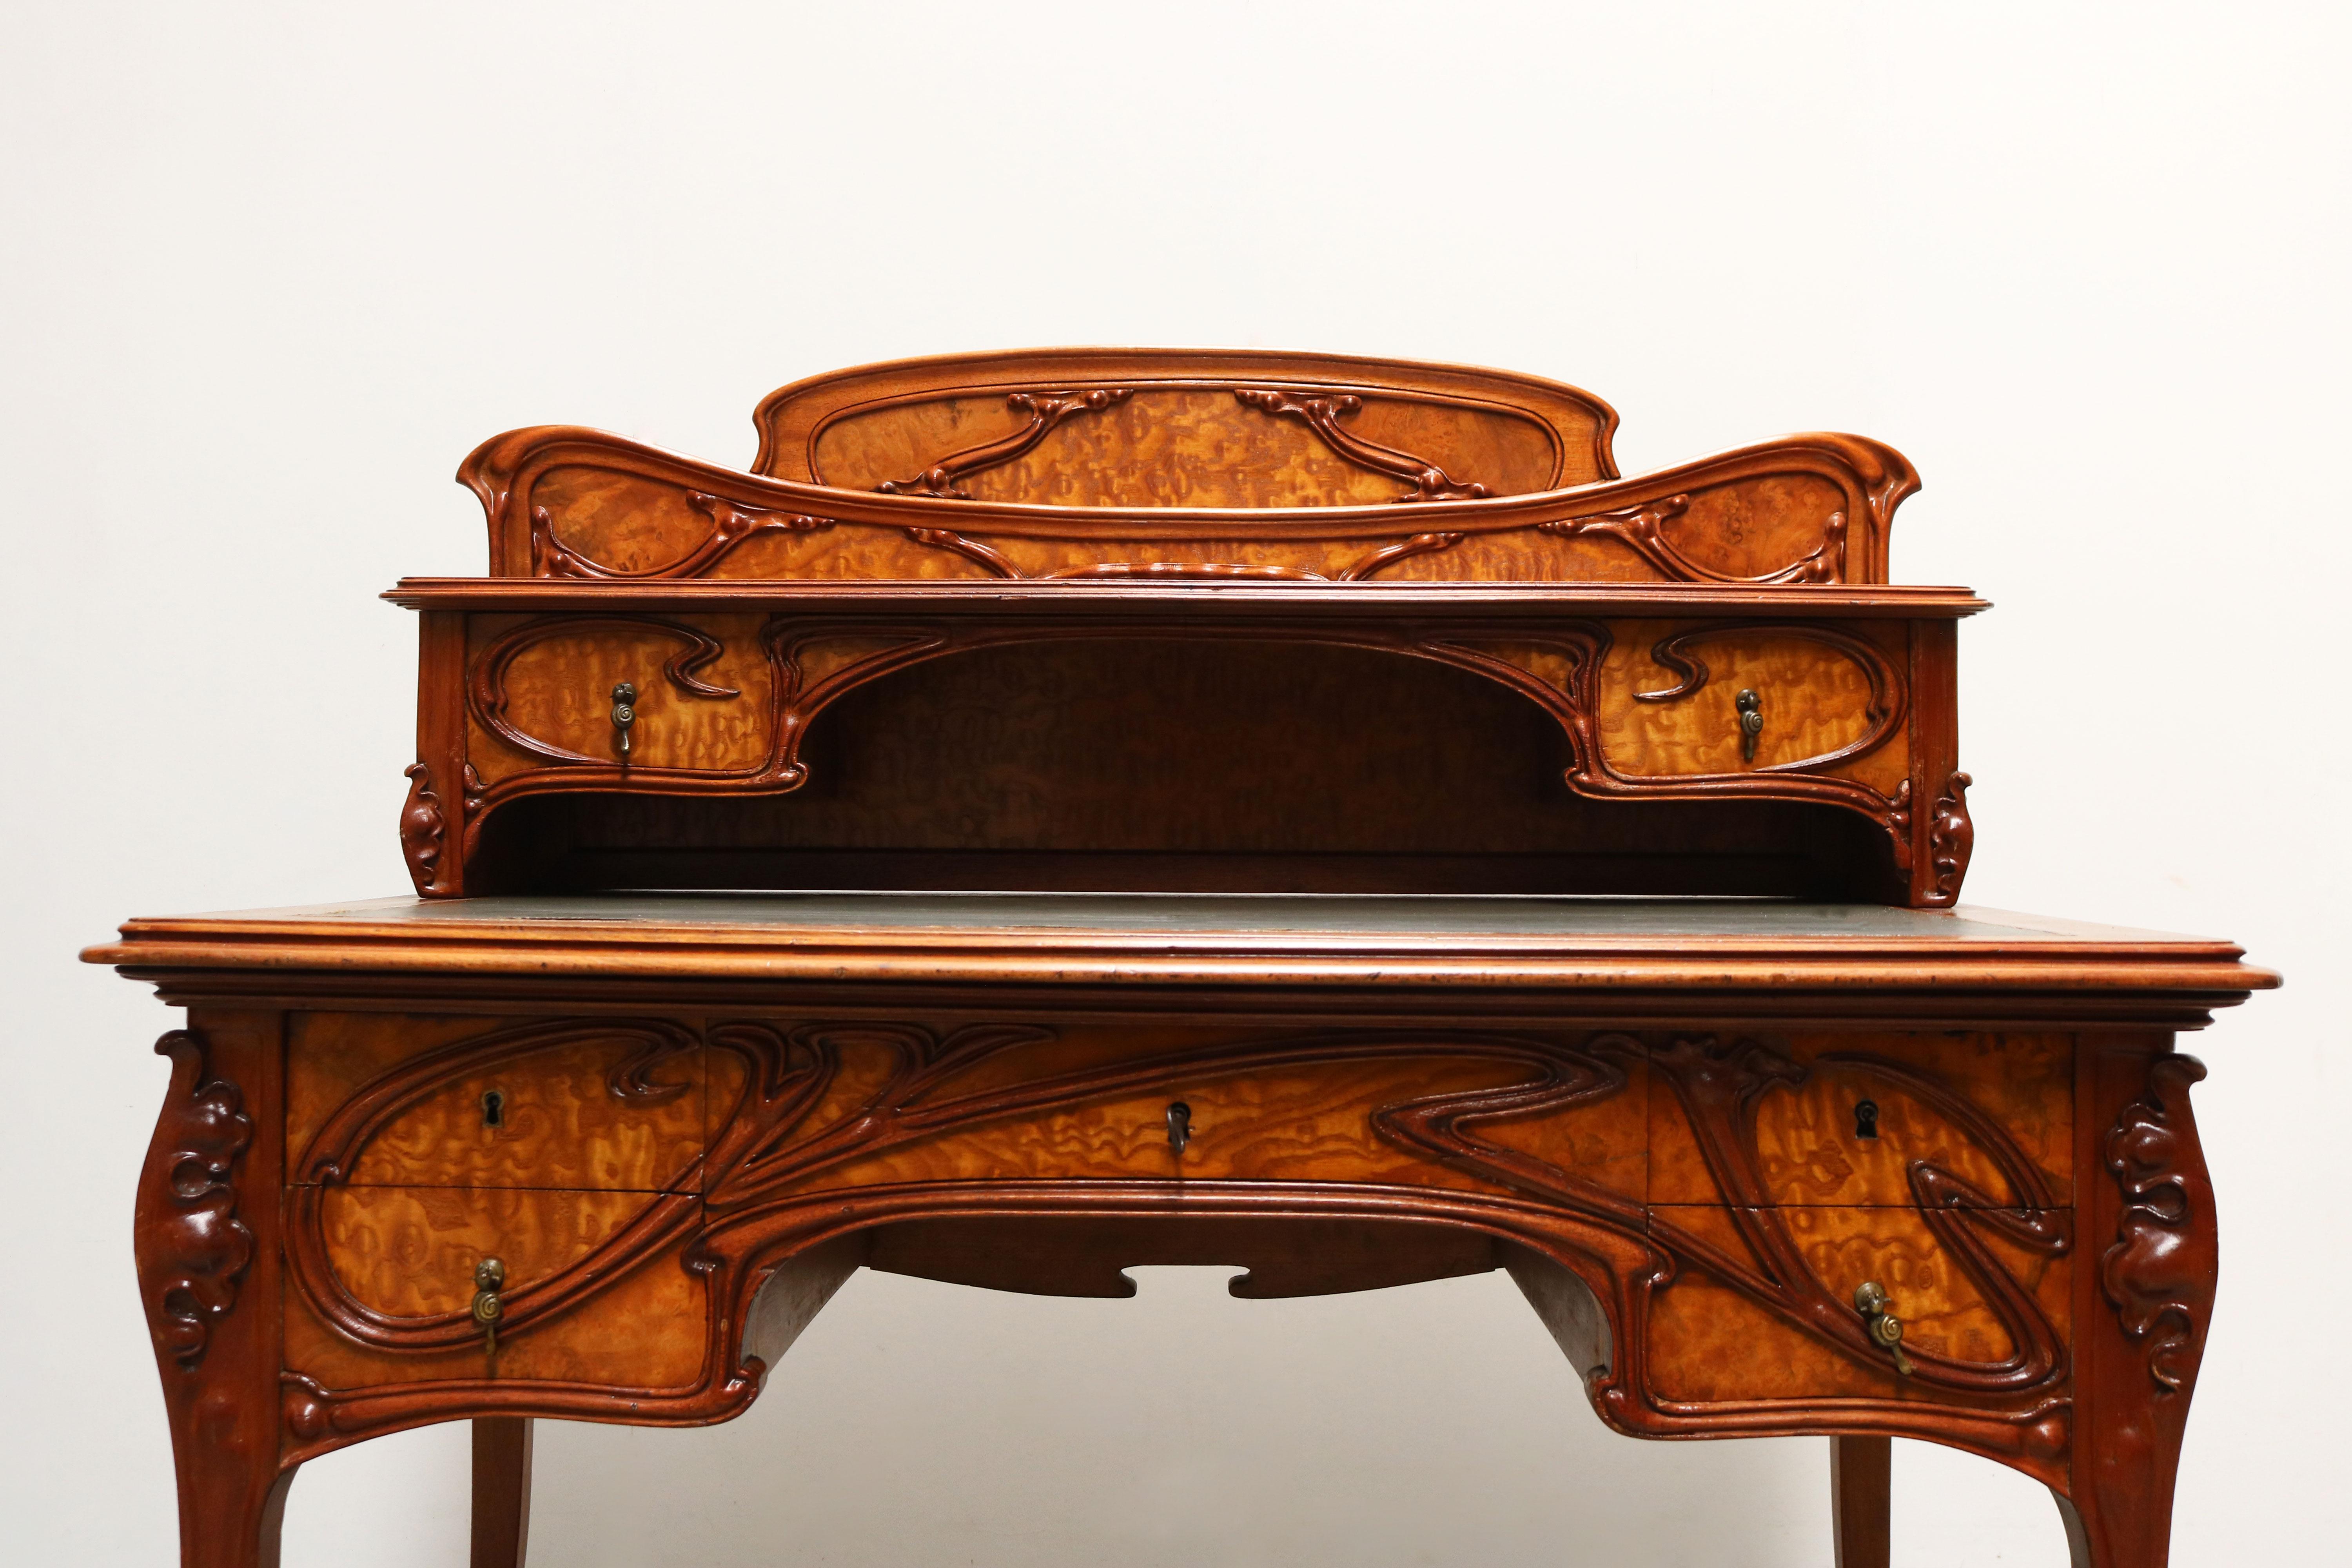 Hand-Carved Exquisite Antique French Art Nouveau Writing Desk 1895 Japanese Ash Jugendstil